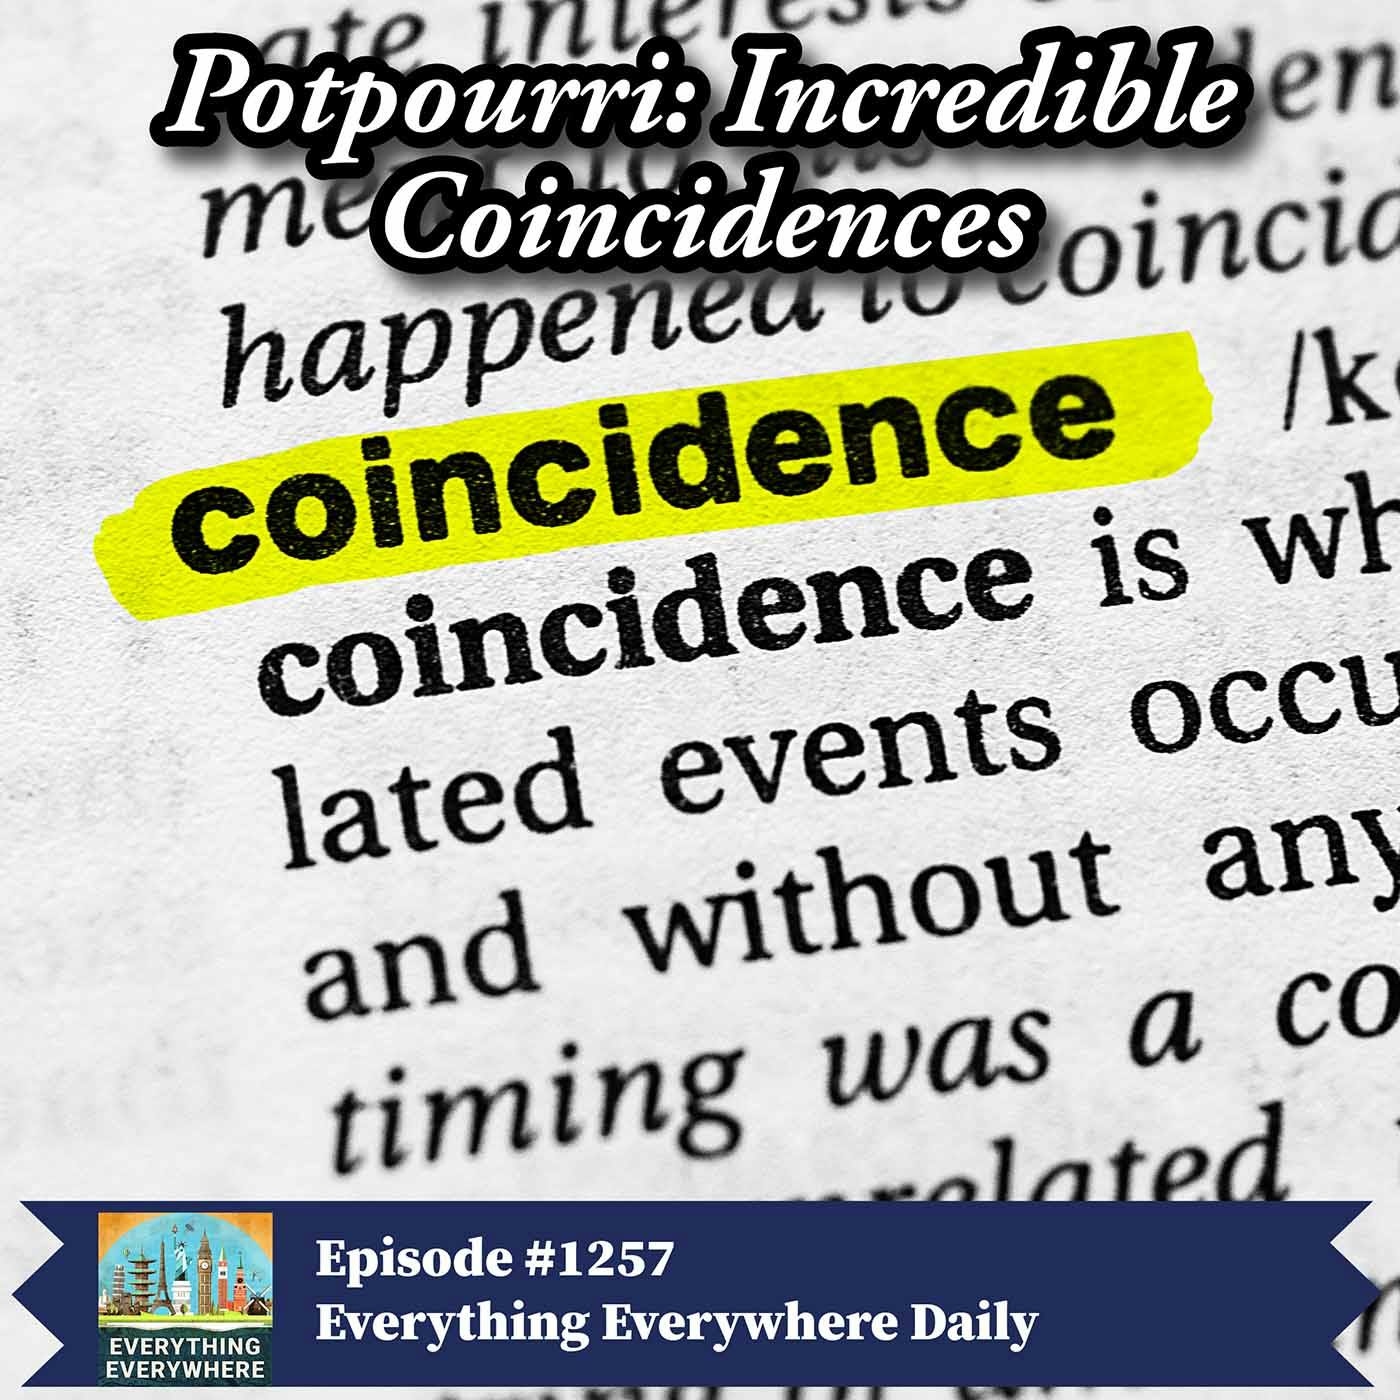 Potpourri: Incredible Coincidences